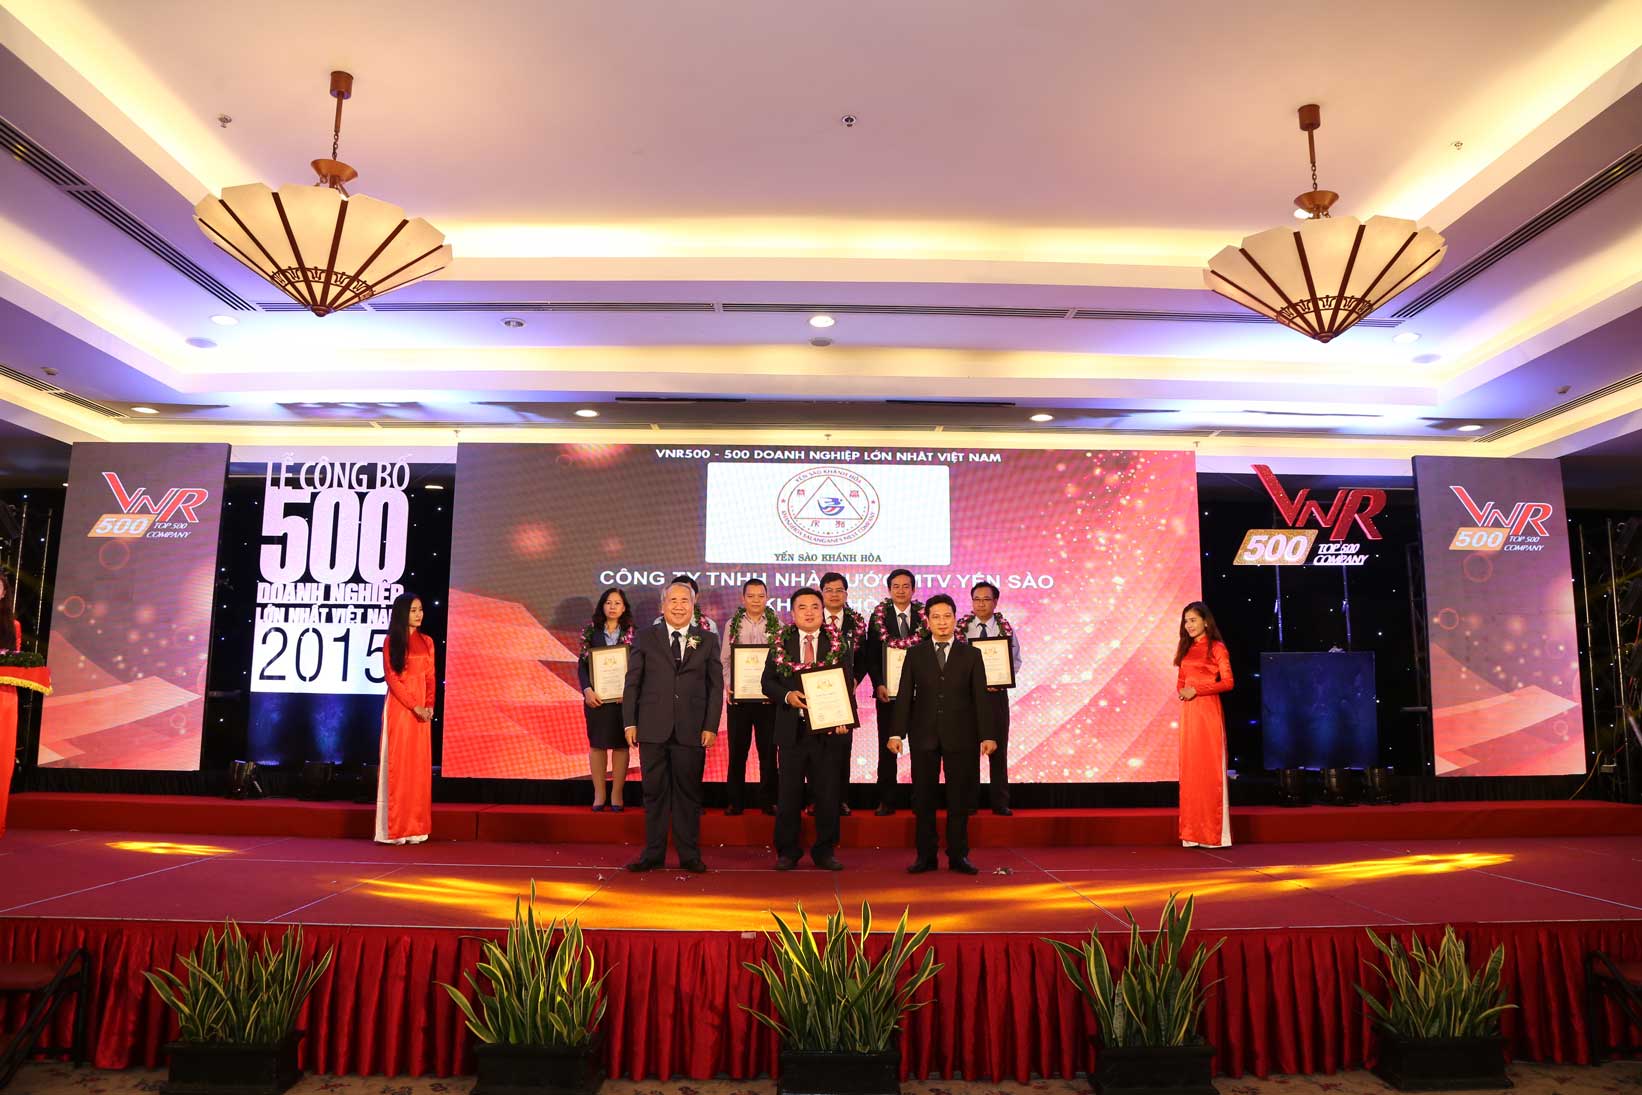 Công ty Yến sào Khánh Hòa vinh dự lần thứ 4 được xếp hạng trong Top 500 doanh nghiệp lớn nhất Việt Nam 2015